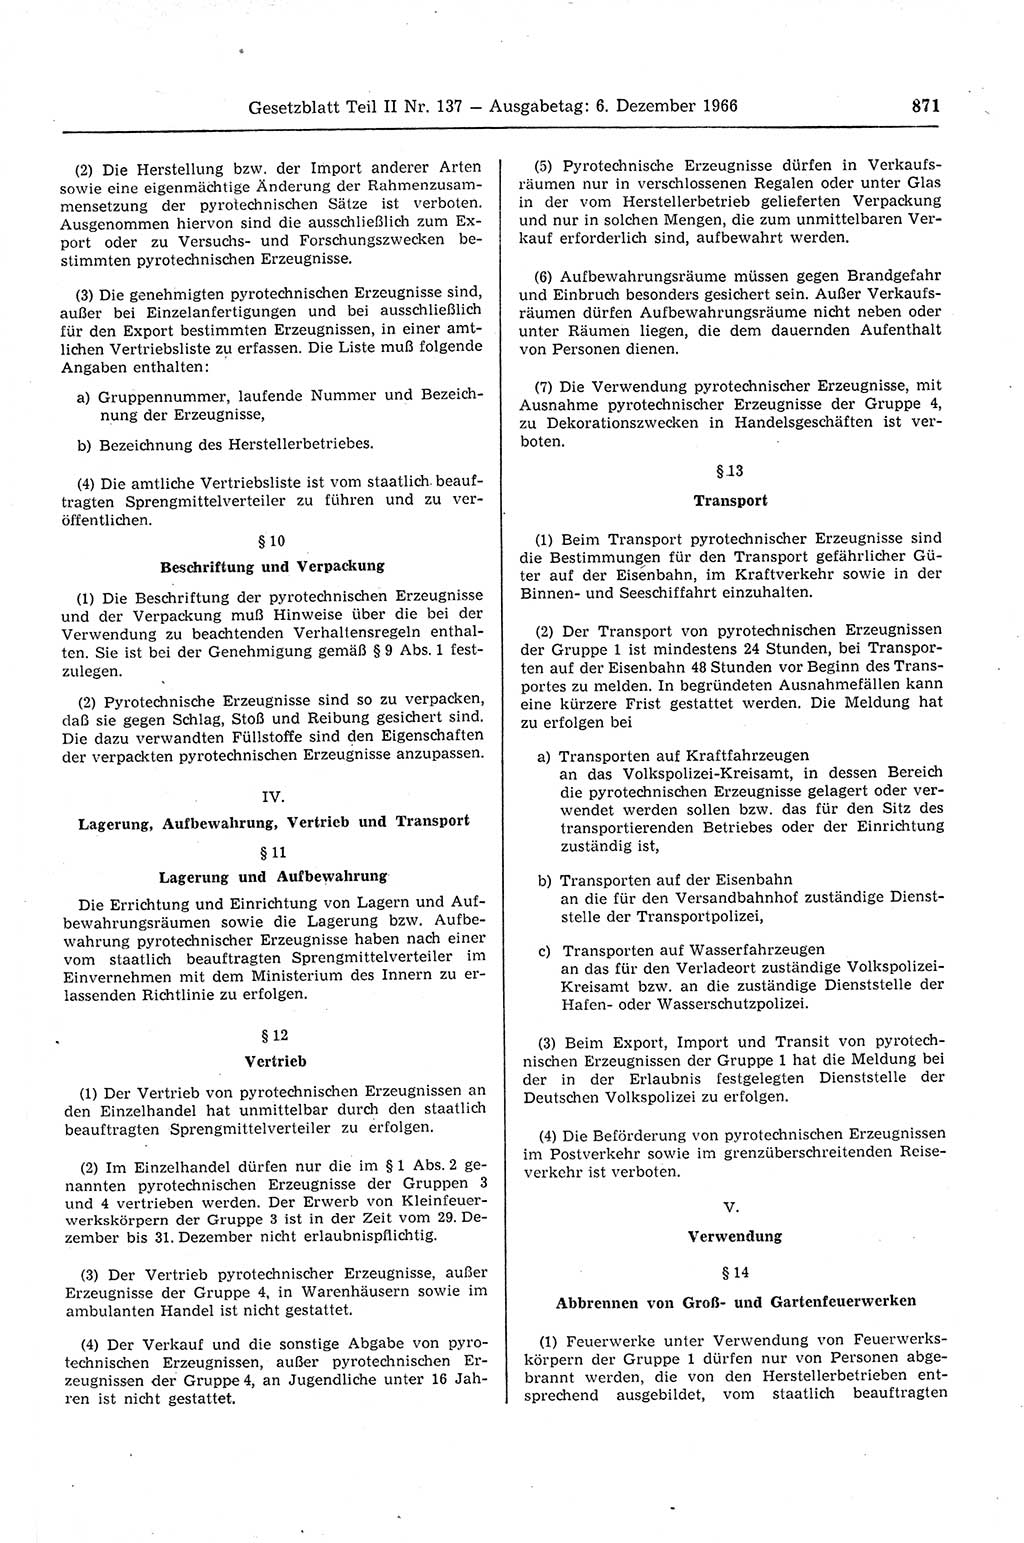 Gesetzblatt (GBl.) der Deutschen Demokratischen Republik (DDR) Teil ⅠⅠ 1966, Seite 871 (GBl. DDR ⅠⅠ 1966, S. 871)